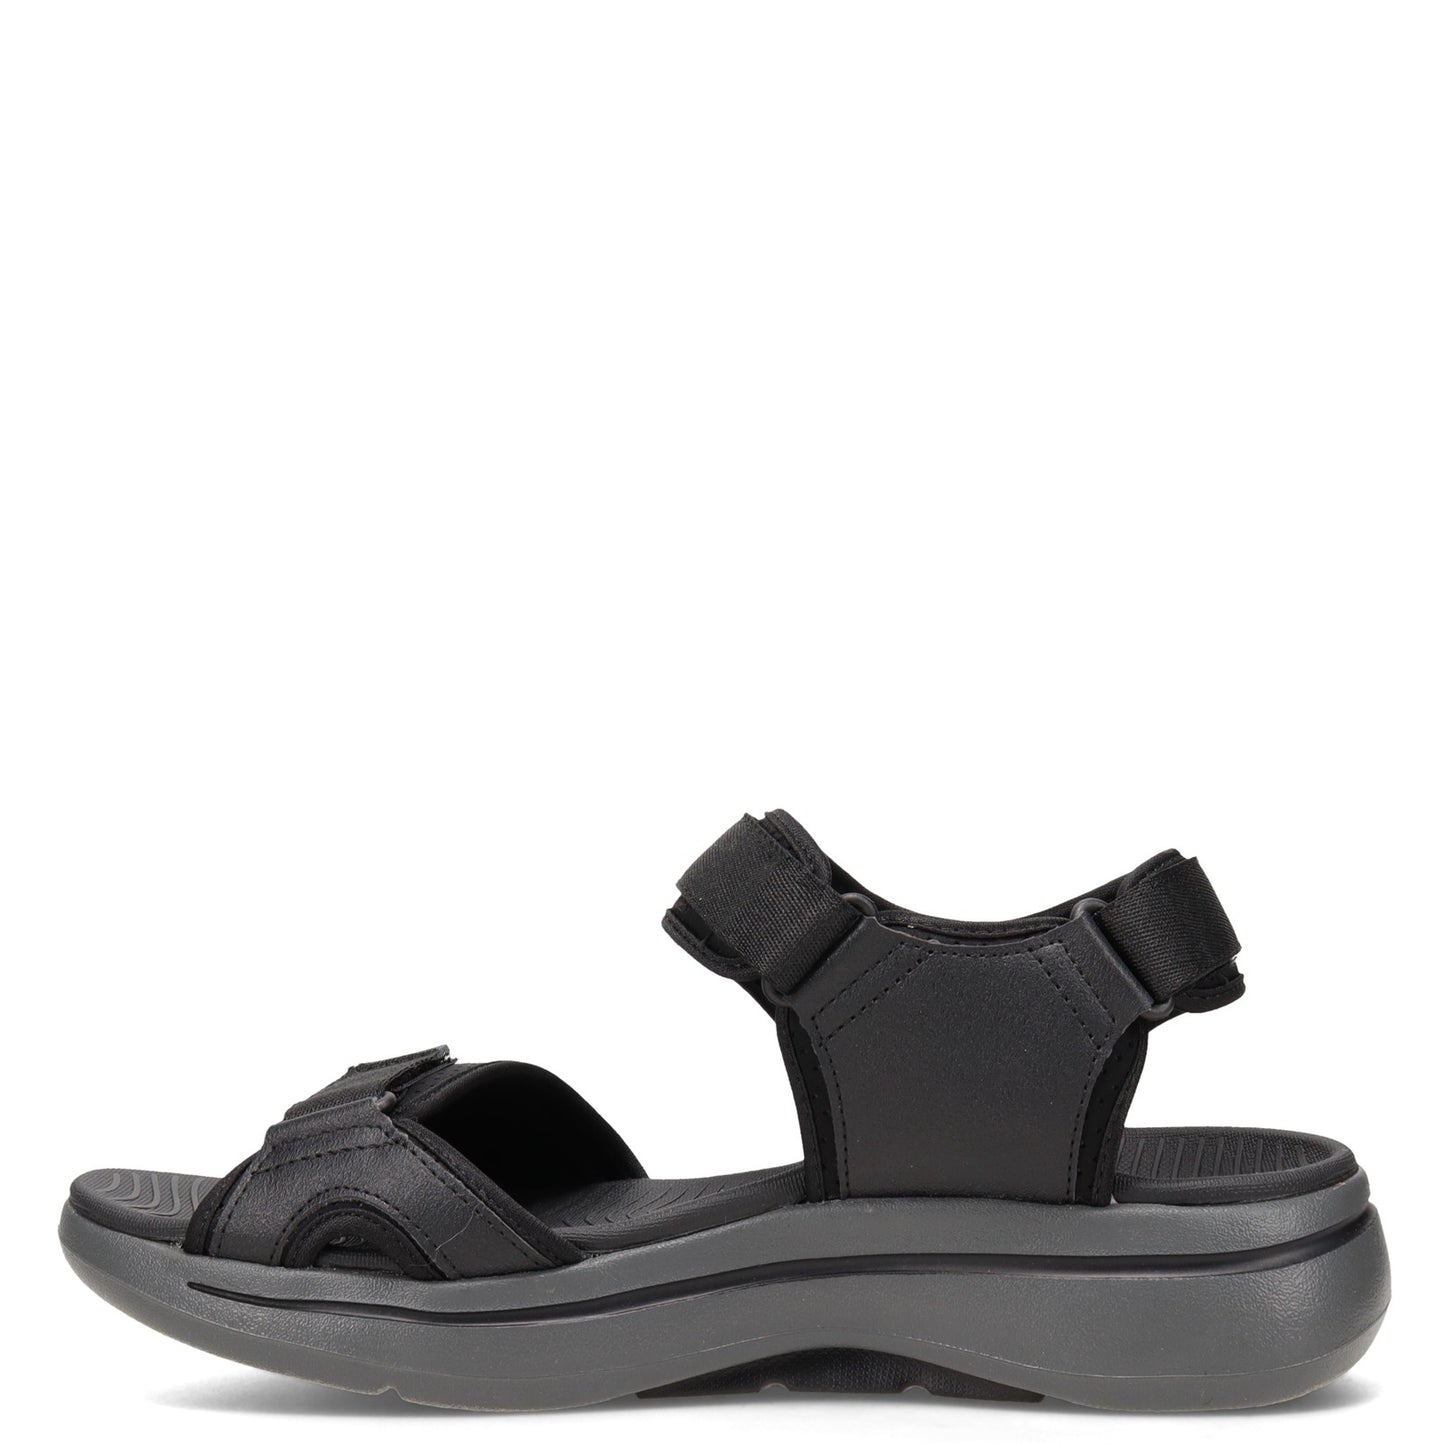 Peltz Shoes  Men's Skechers GOwalk Arch Fit Sandal BLACK / CHARCOAL 229020-BKCC